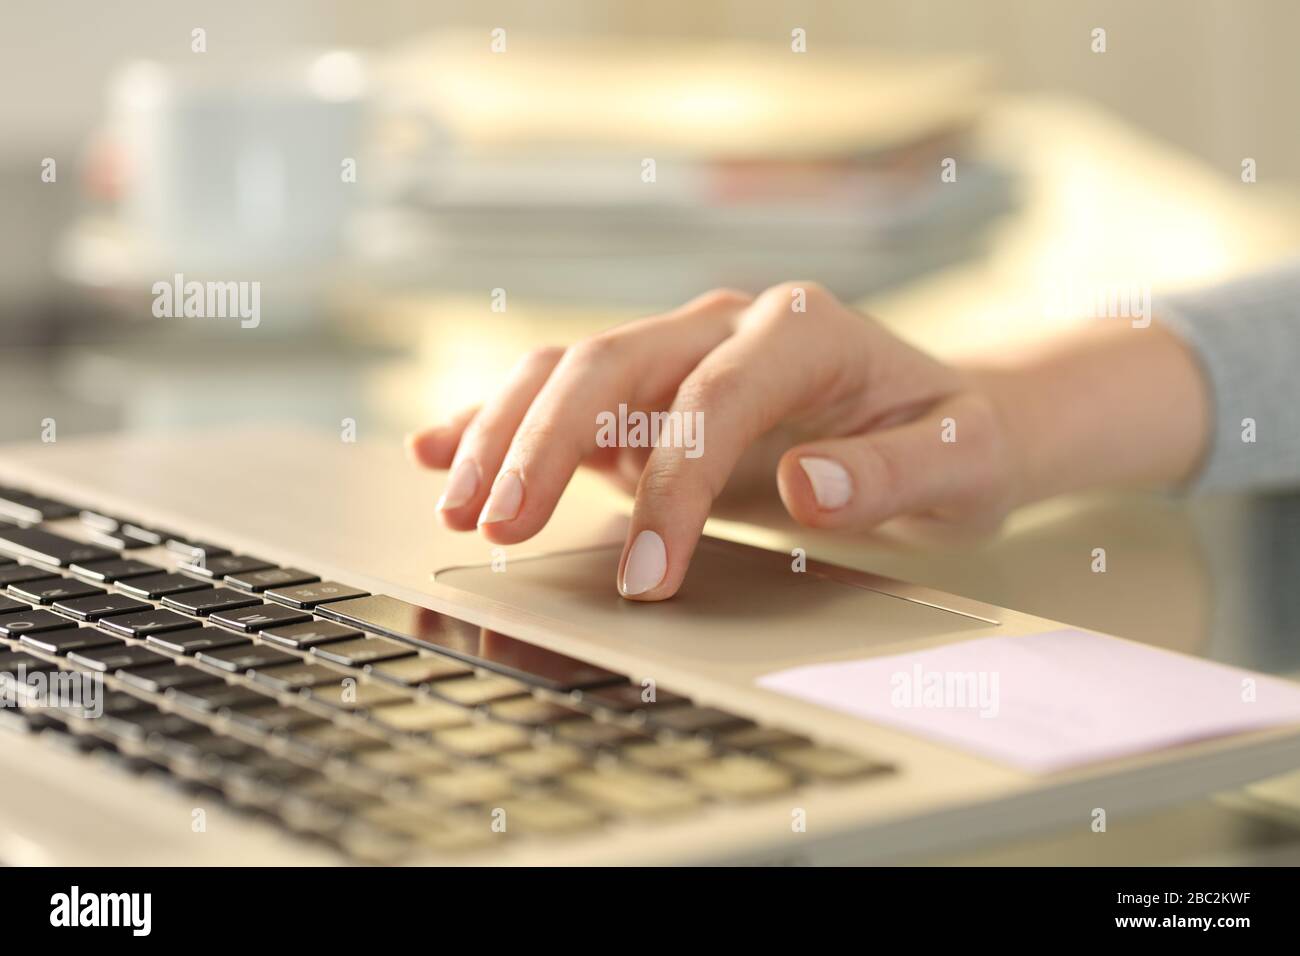 Gros plan sur la main d'une femme avec un ordinateur portable à l'aide du pavé tactile sur un bureau à la maison Banque D'Images